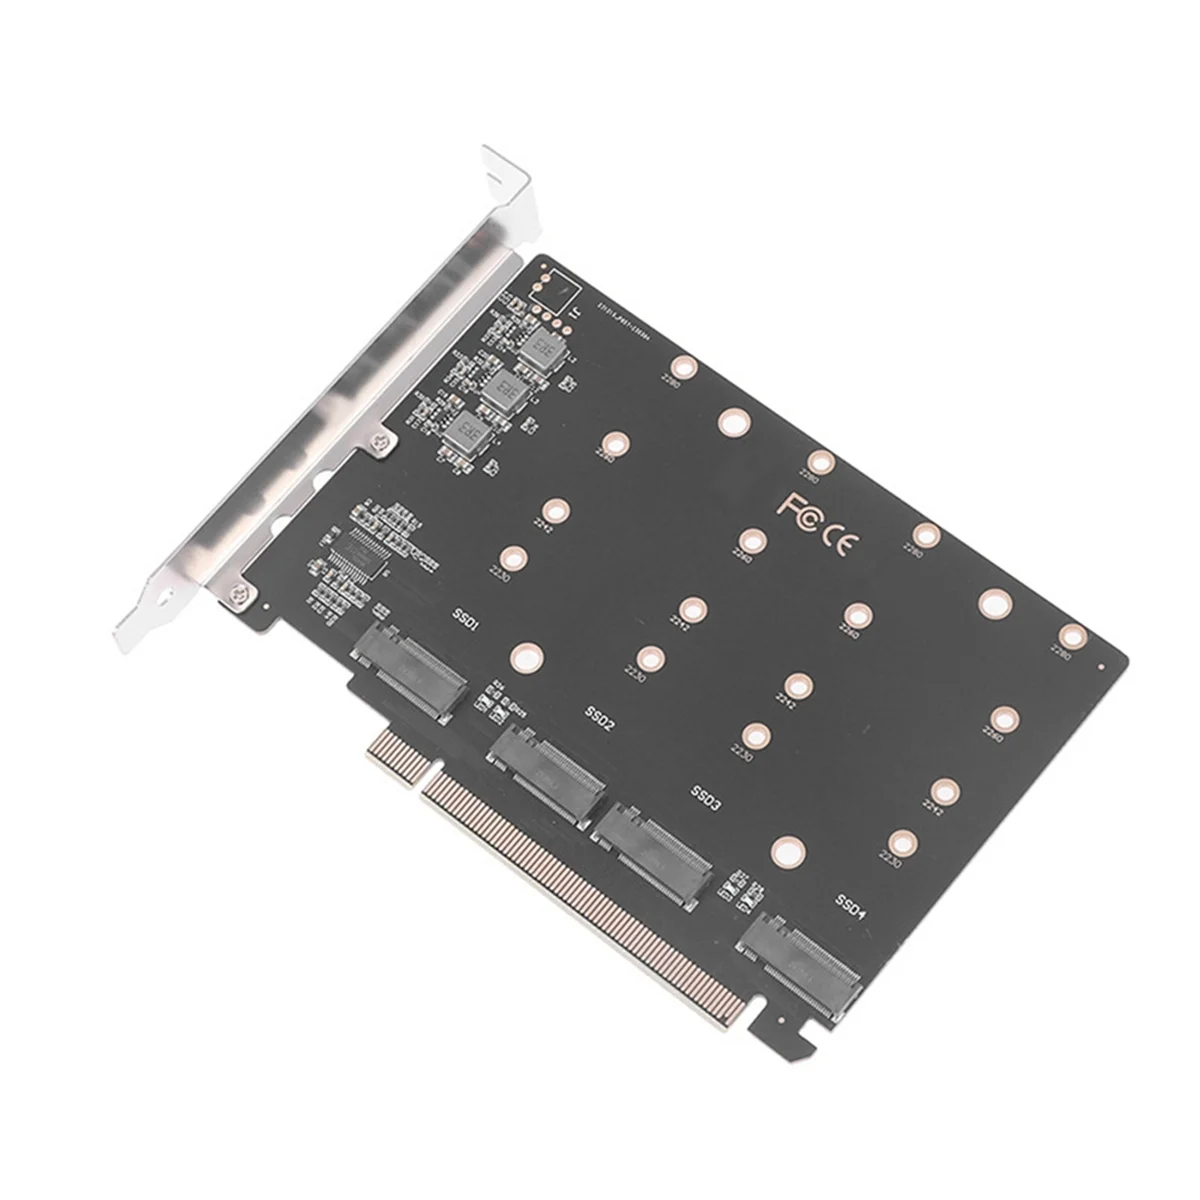 

PCIe 4,0 5,0 X16 до 4 портов NVMe M.2 NGFF SSD адаптер разделенная карта многофункциональный удобный портативный адаптер